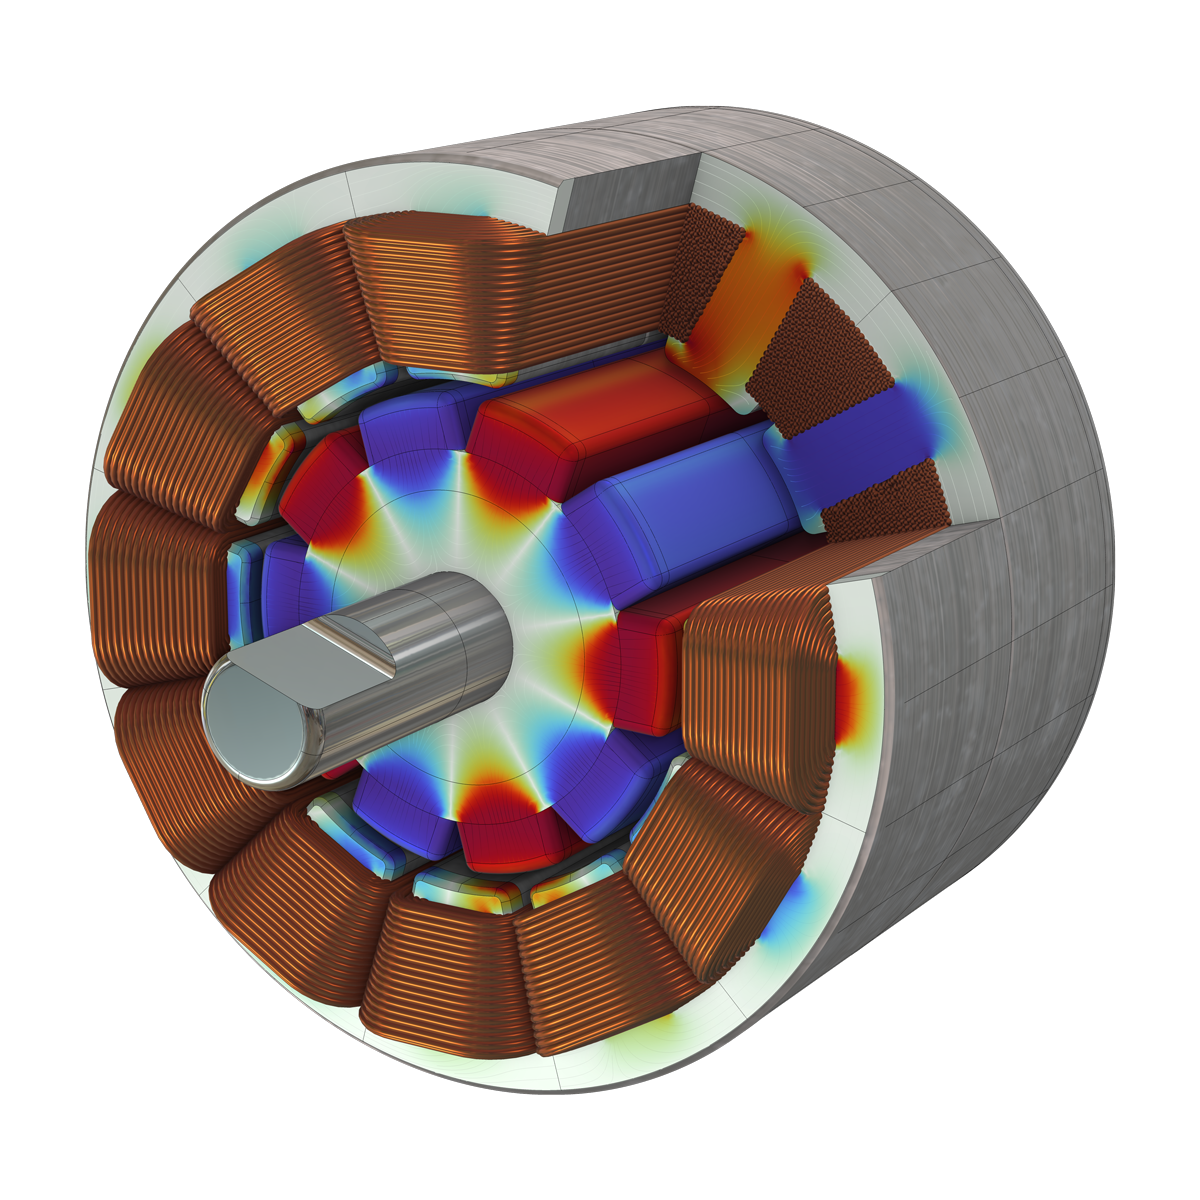 Modello di motore a magneti permanenti 3D visualizzato con bobine di rame e un nucleo in gradazione arcobaleno.